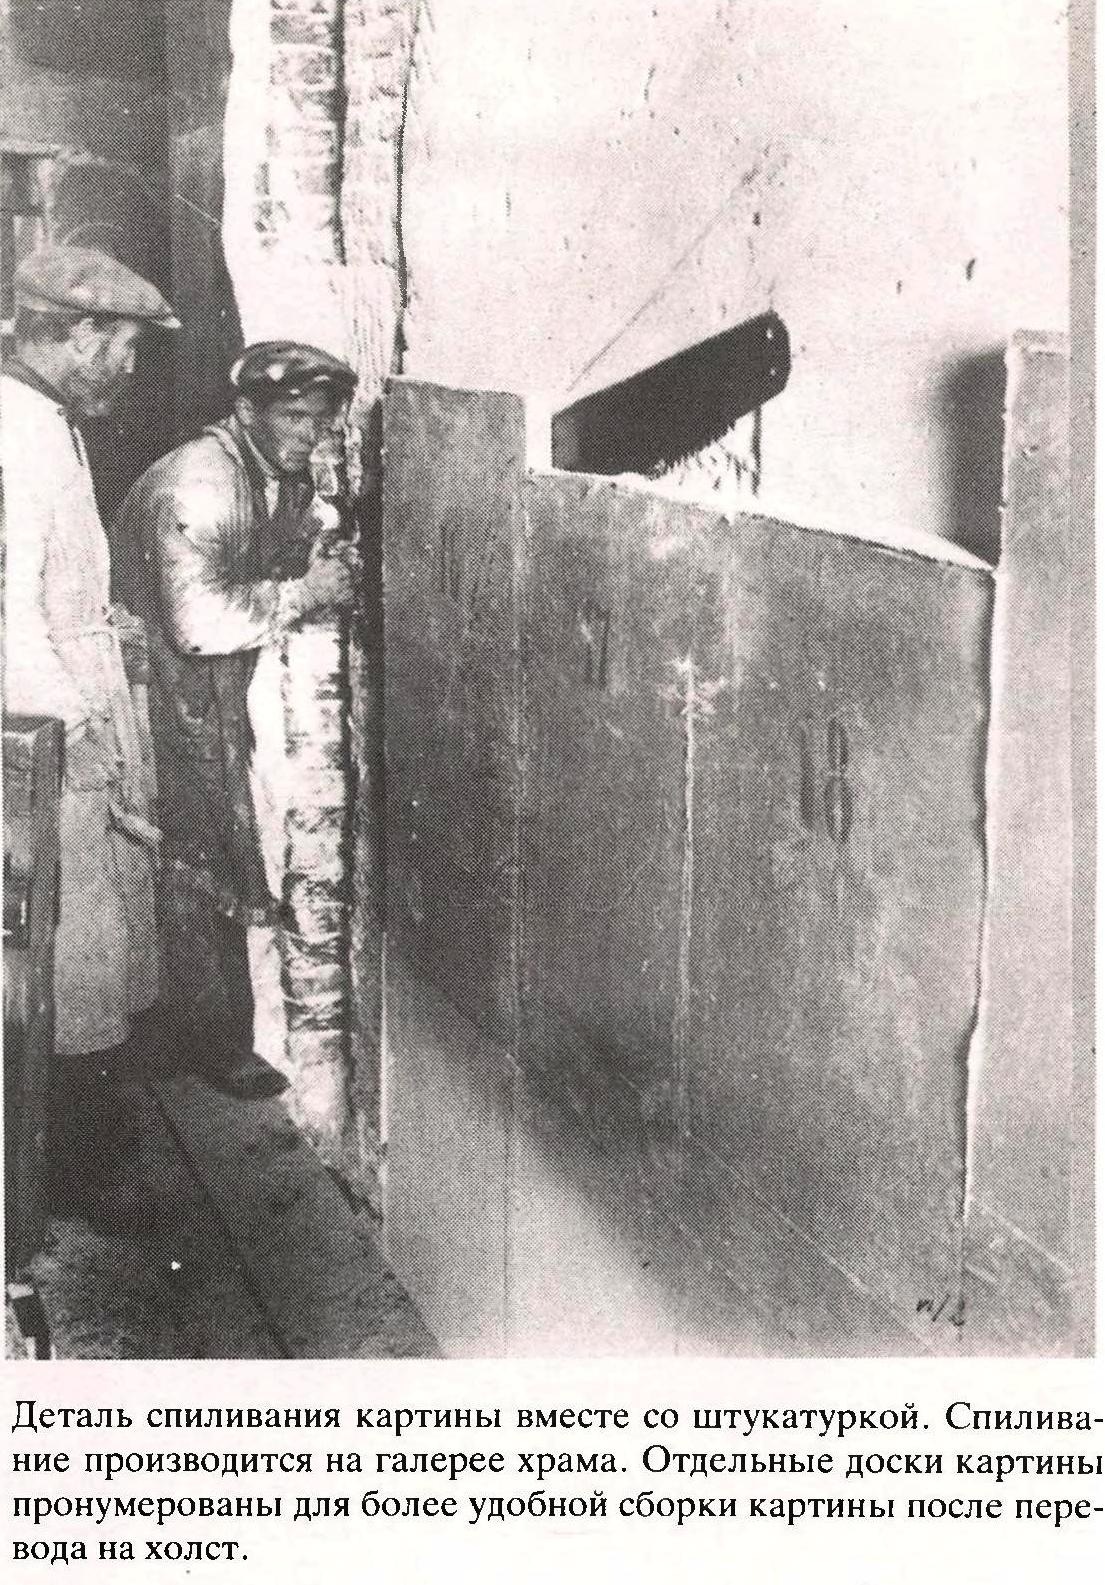 1931 год. Разрушение храма Христа-спасителя. Часть 1